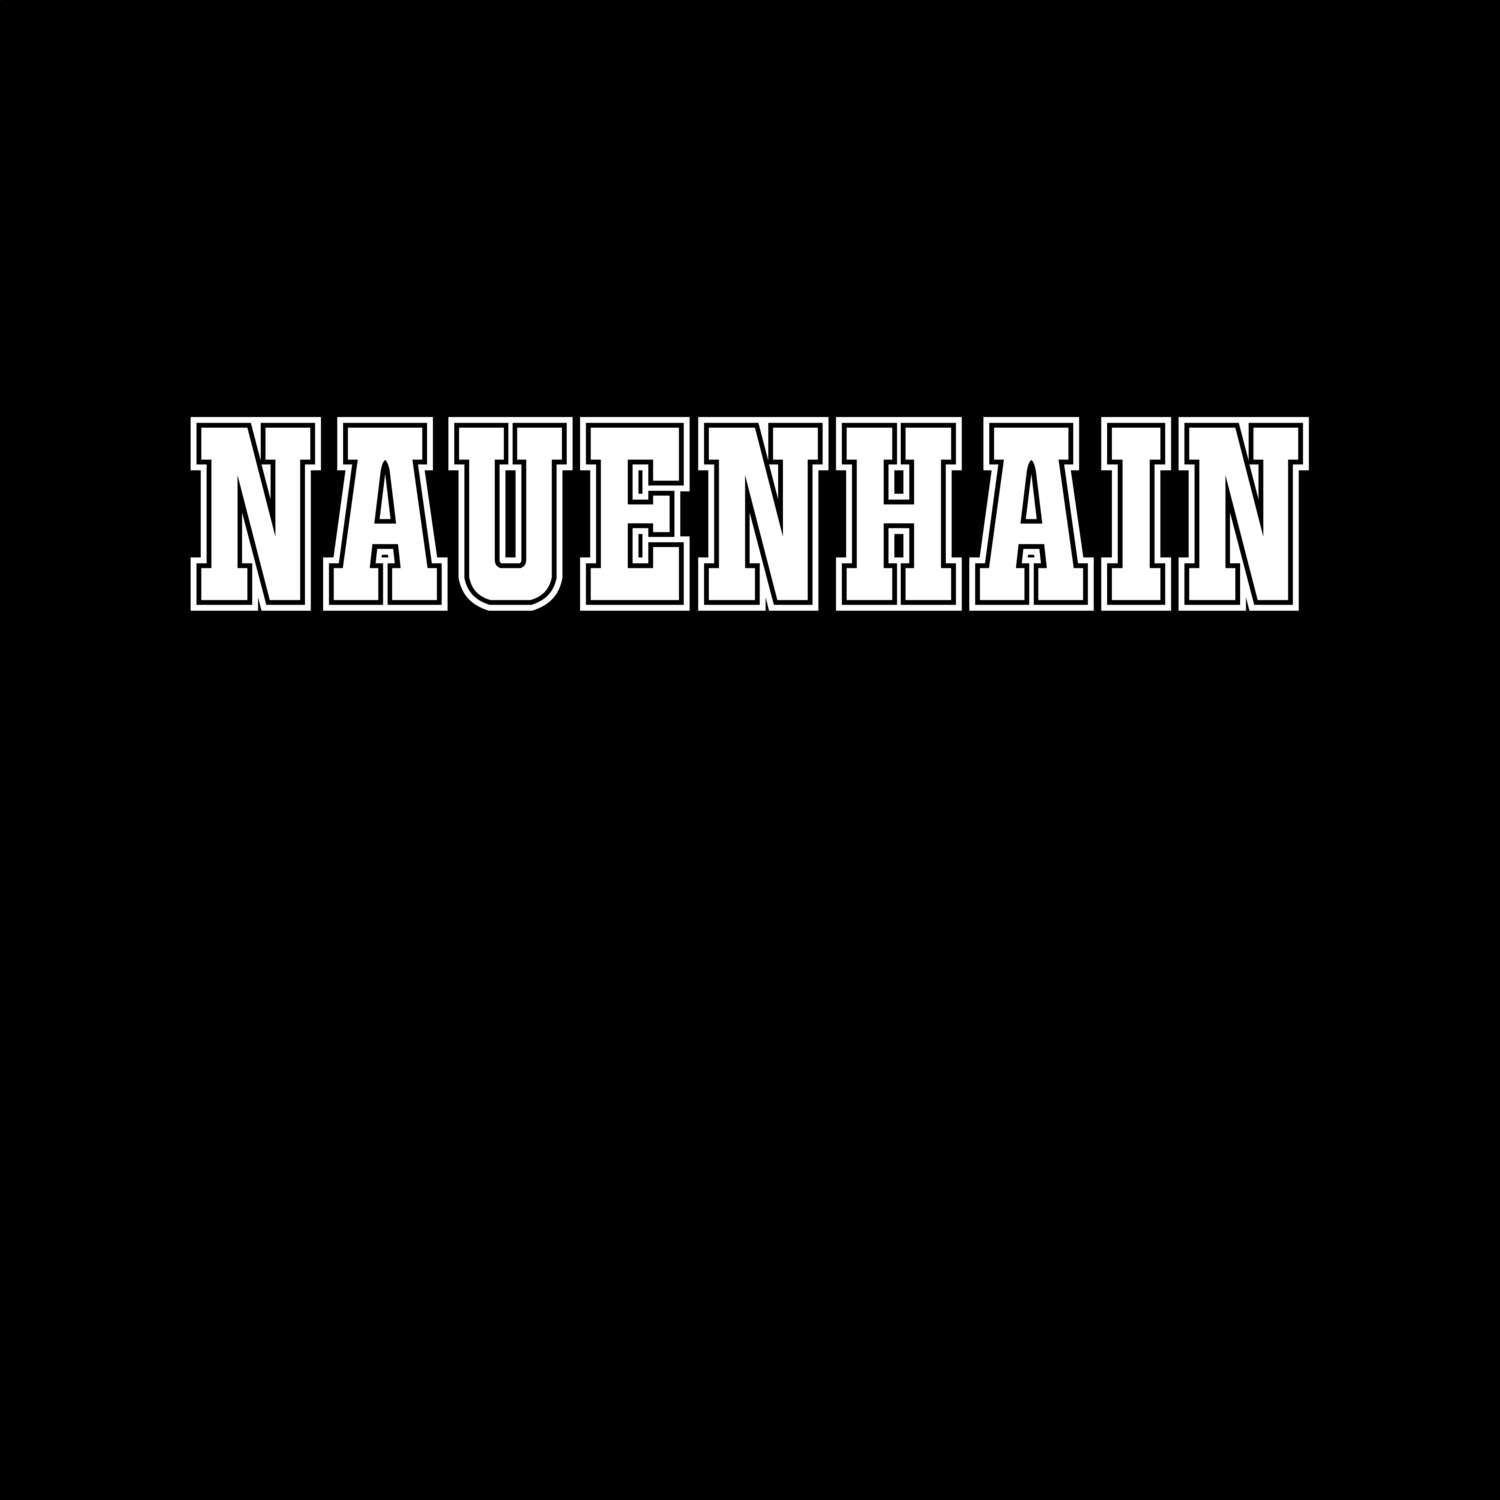 Nauenhain T-Shirt »Classic«